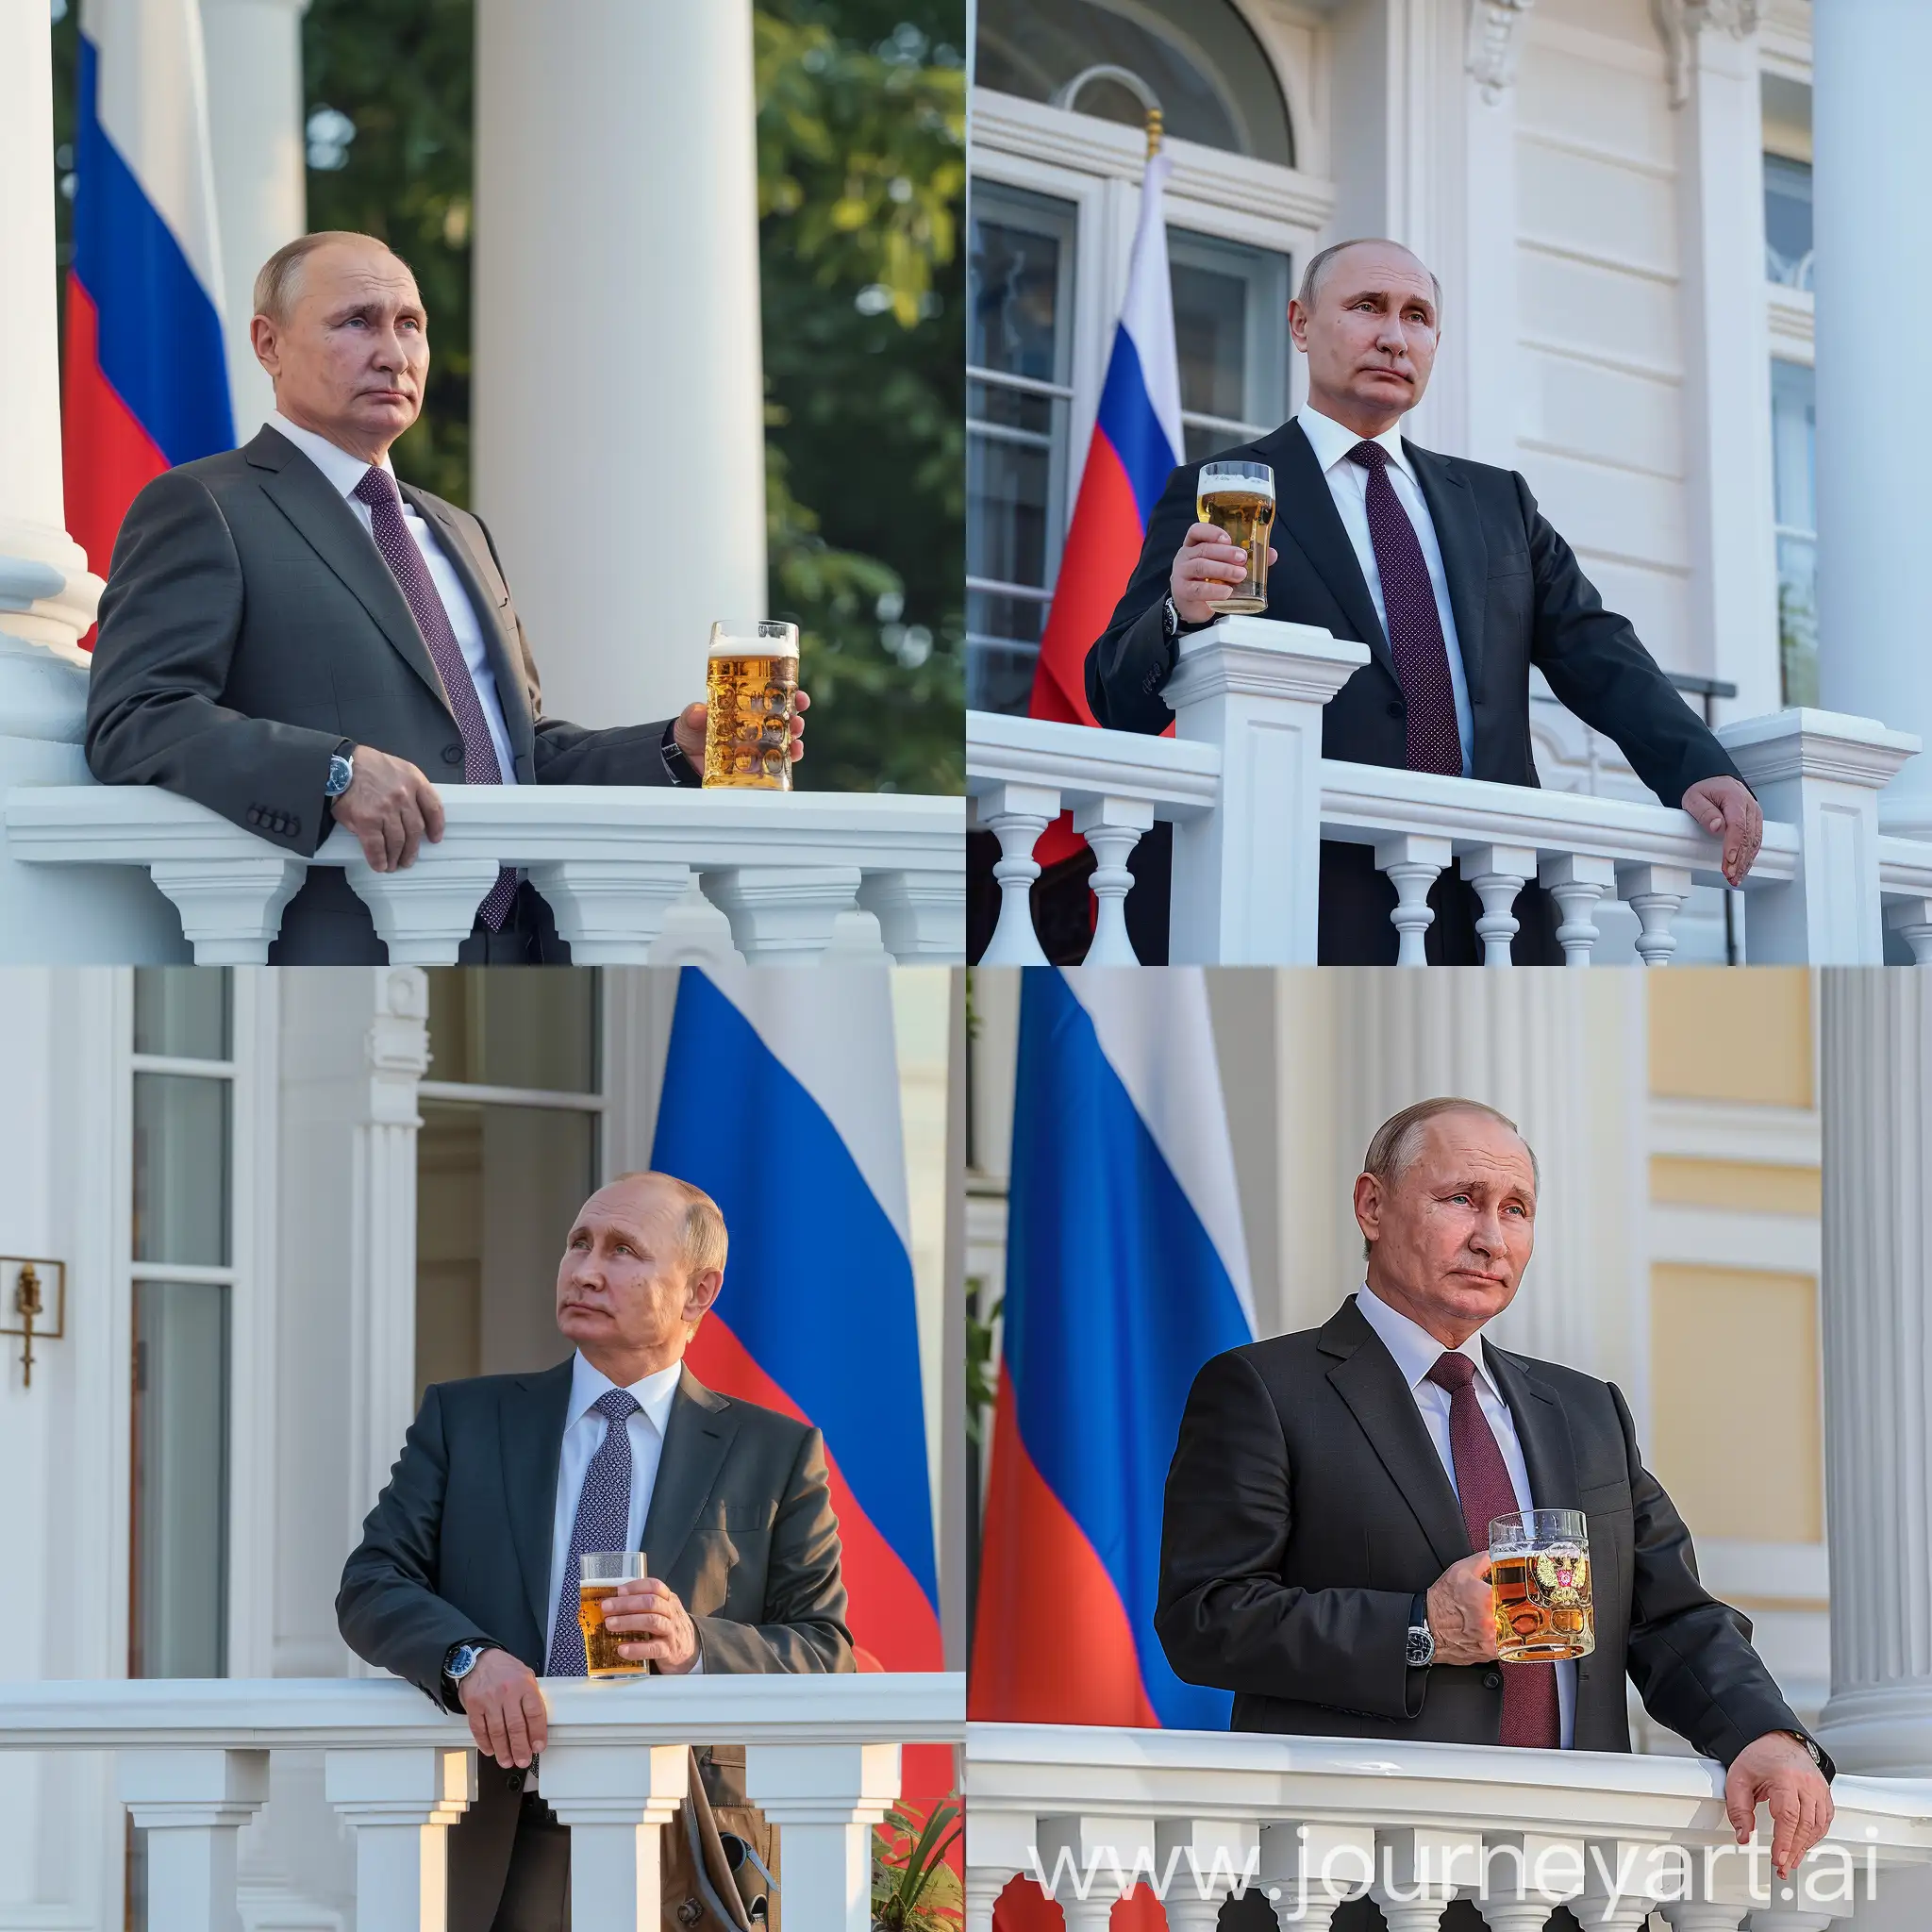 Владимир Путин стоит на балконе своего белого особняка, в деловом костюме, в руке бокал с пивом, 8к, задний фон флаг россии, супер детализация, острый фокус, летнее время года, профессиональное освещение, крупный план, время суток рассвет, HDR